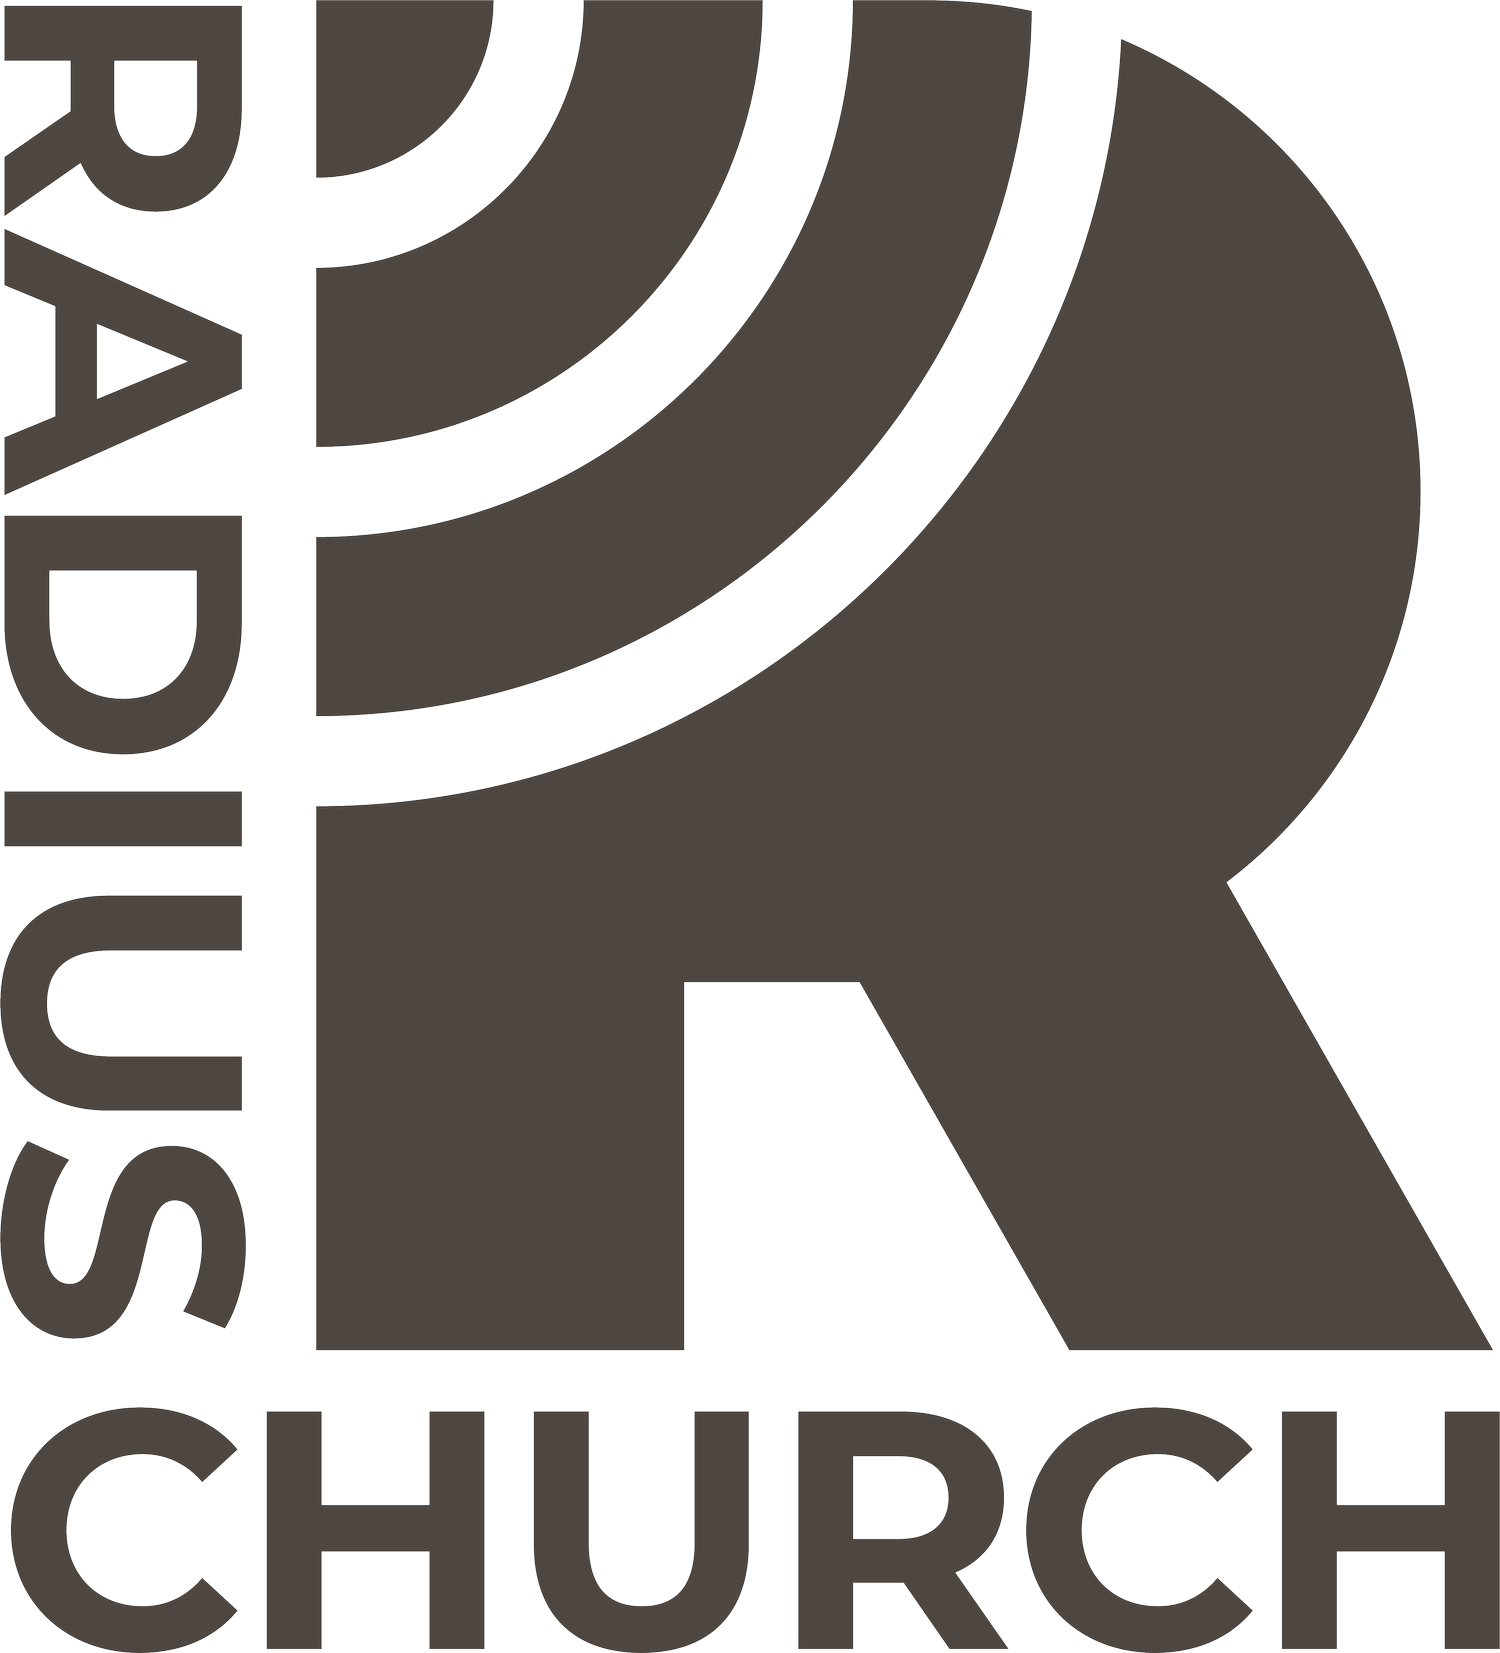 Radius Church